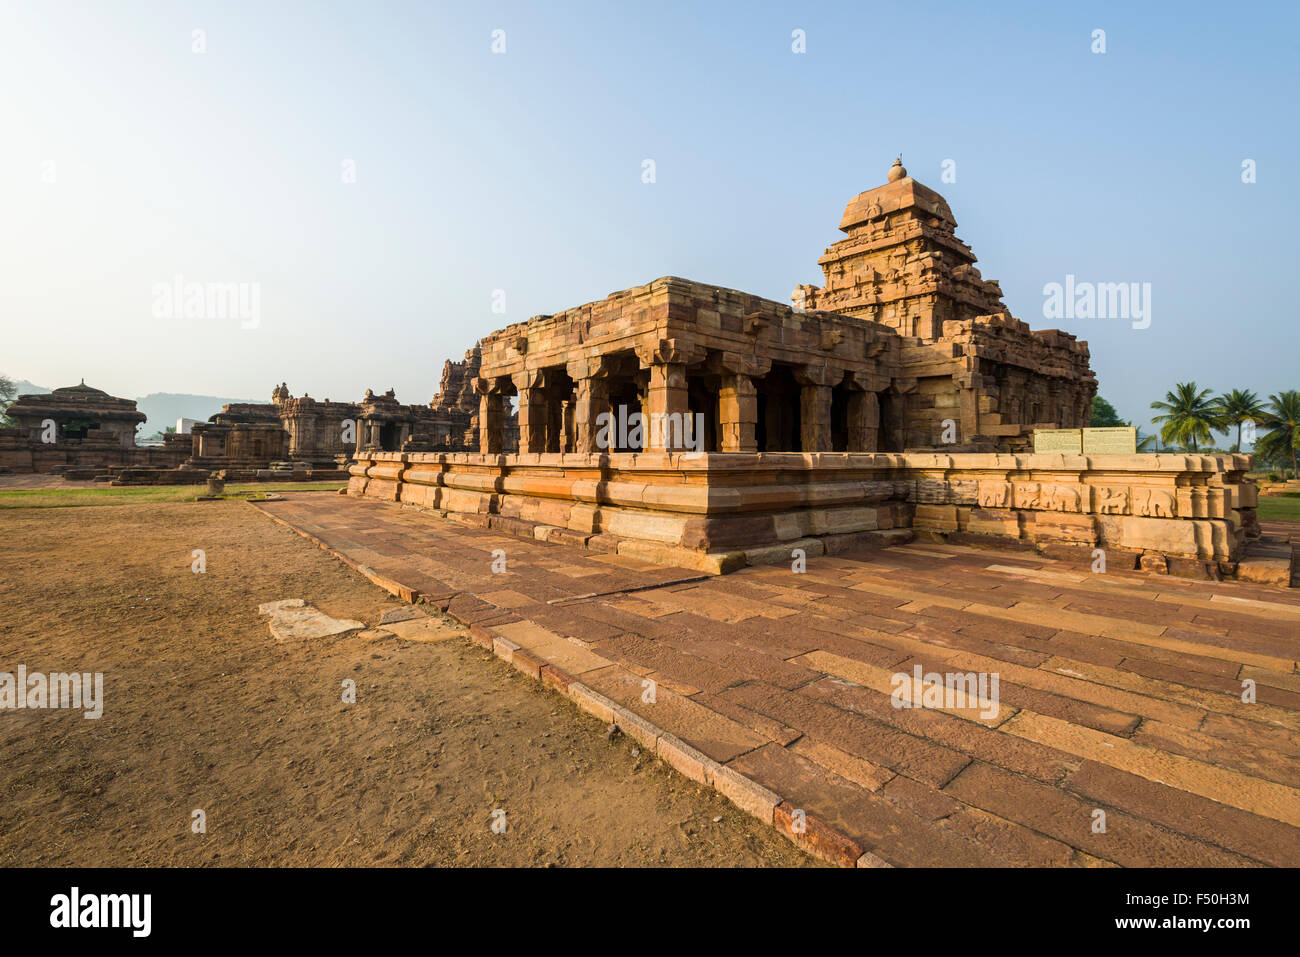 El templo sangameswara es parte de la antigua capital de la dinastía chalukya kisuvolal entre el 7º y 9º siglos, n Foto de stock